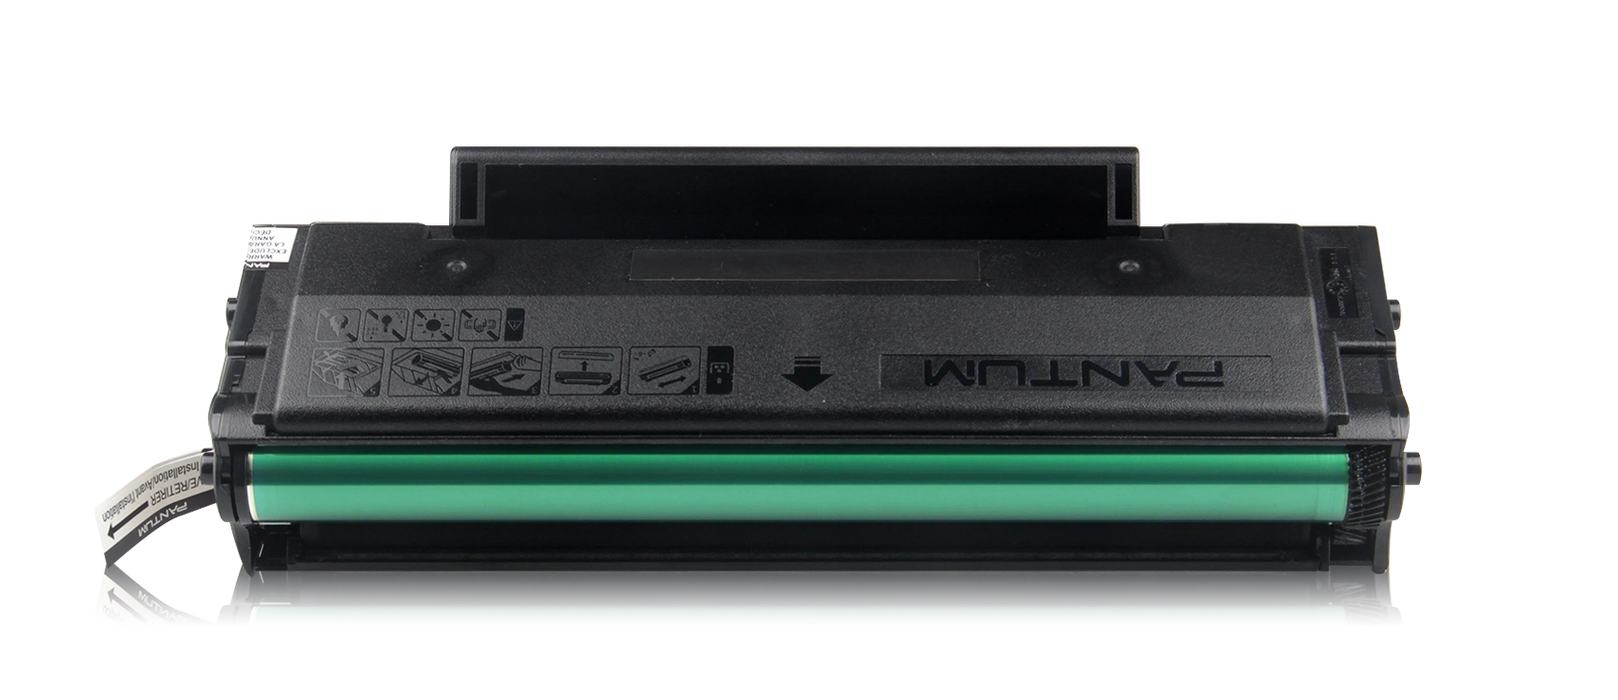 Genuine Pantum Economic Toner Cartridge PC-210 For Pantum P2500 Monochrome Laser Printers - 1,600 Pages